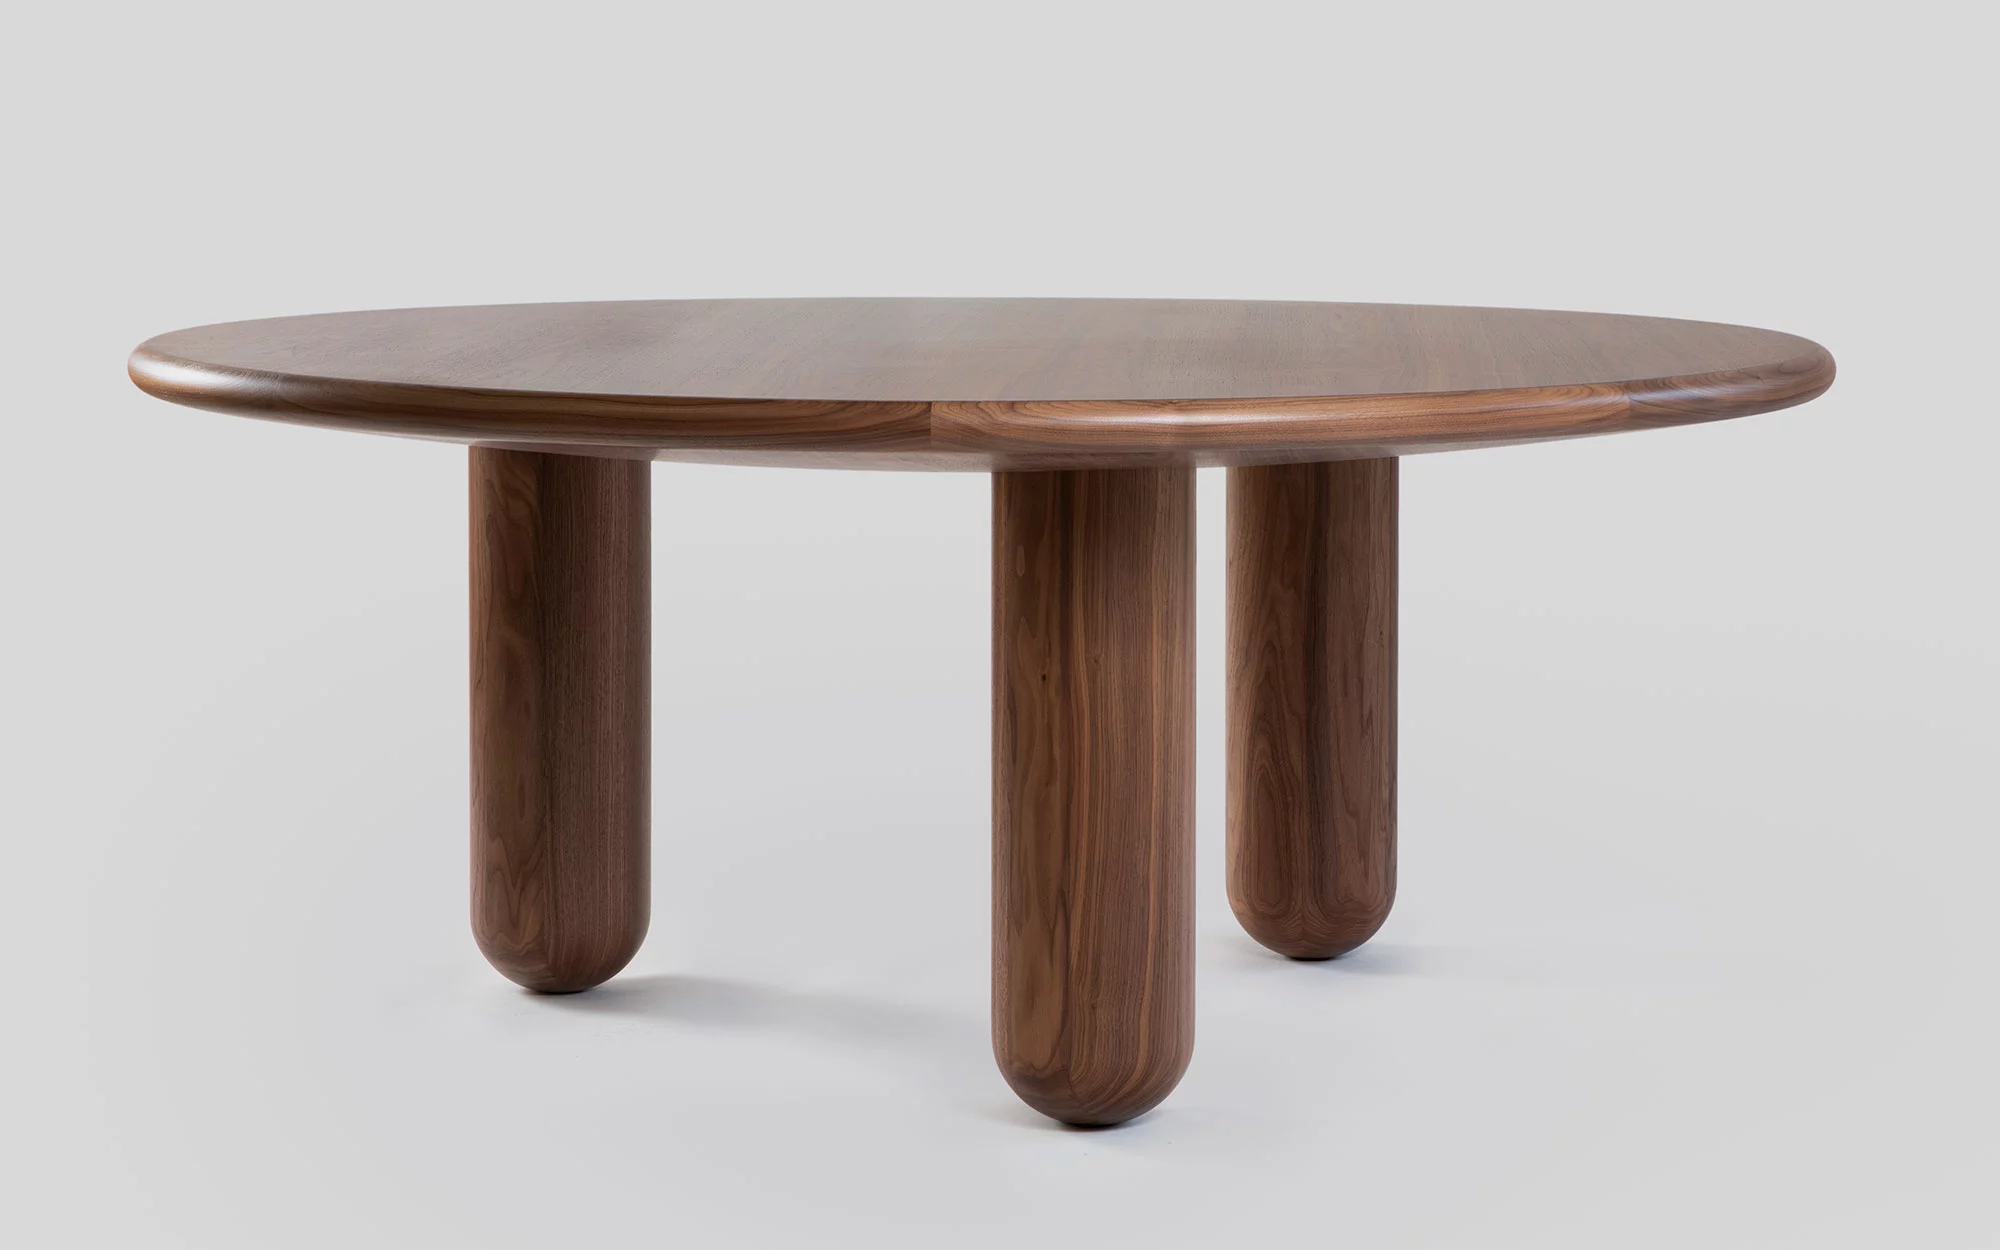 Organism table - Jaime Hayon - Table - Galerie kreo